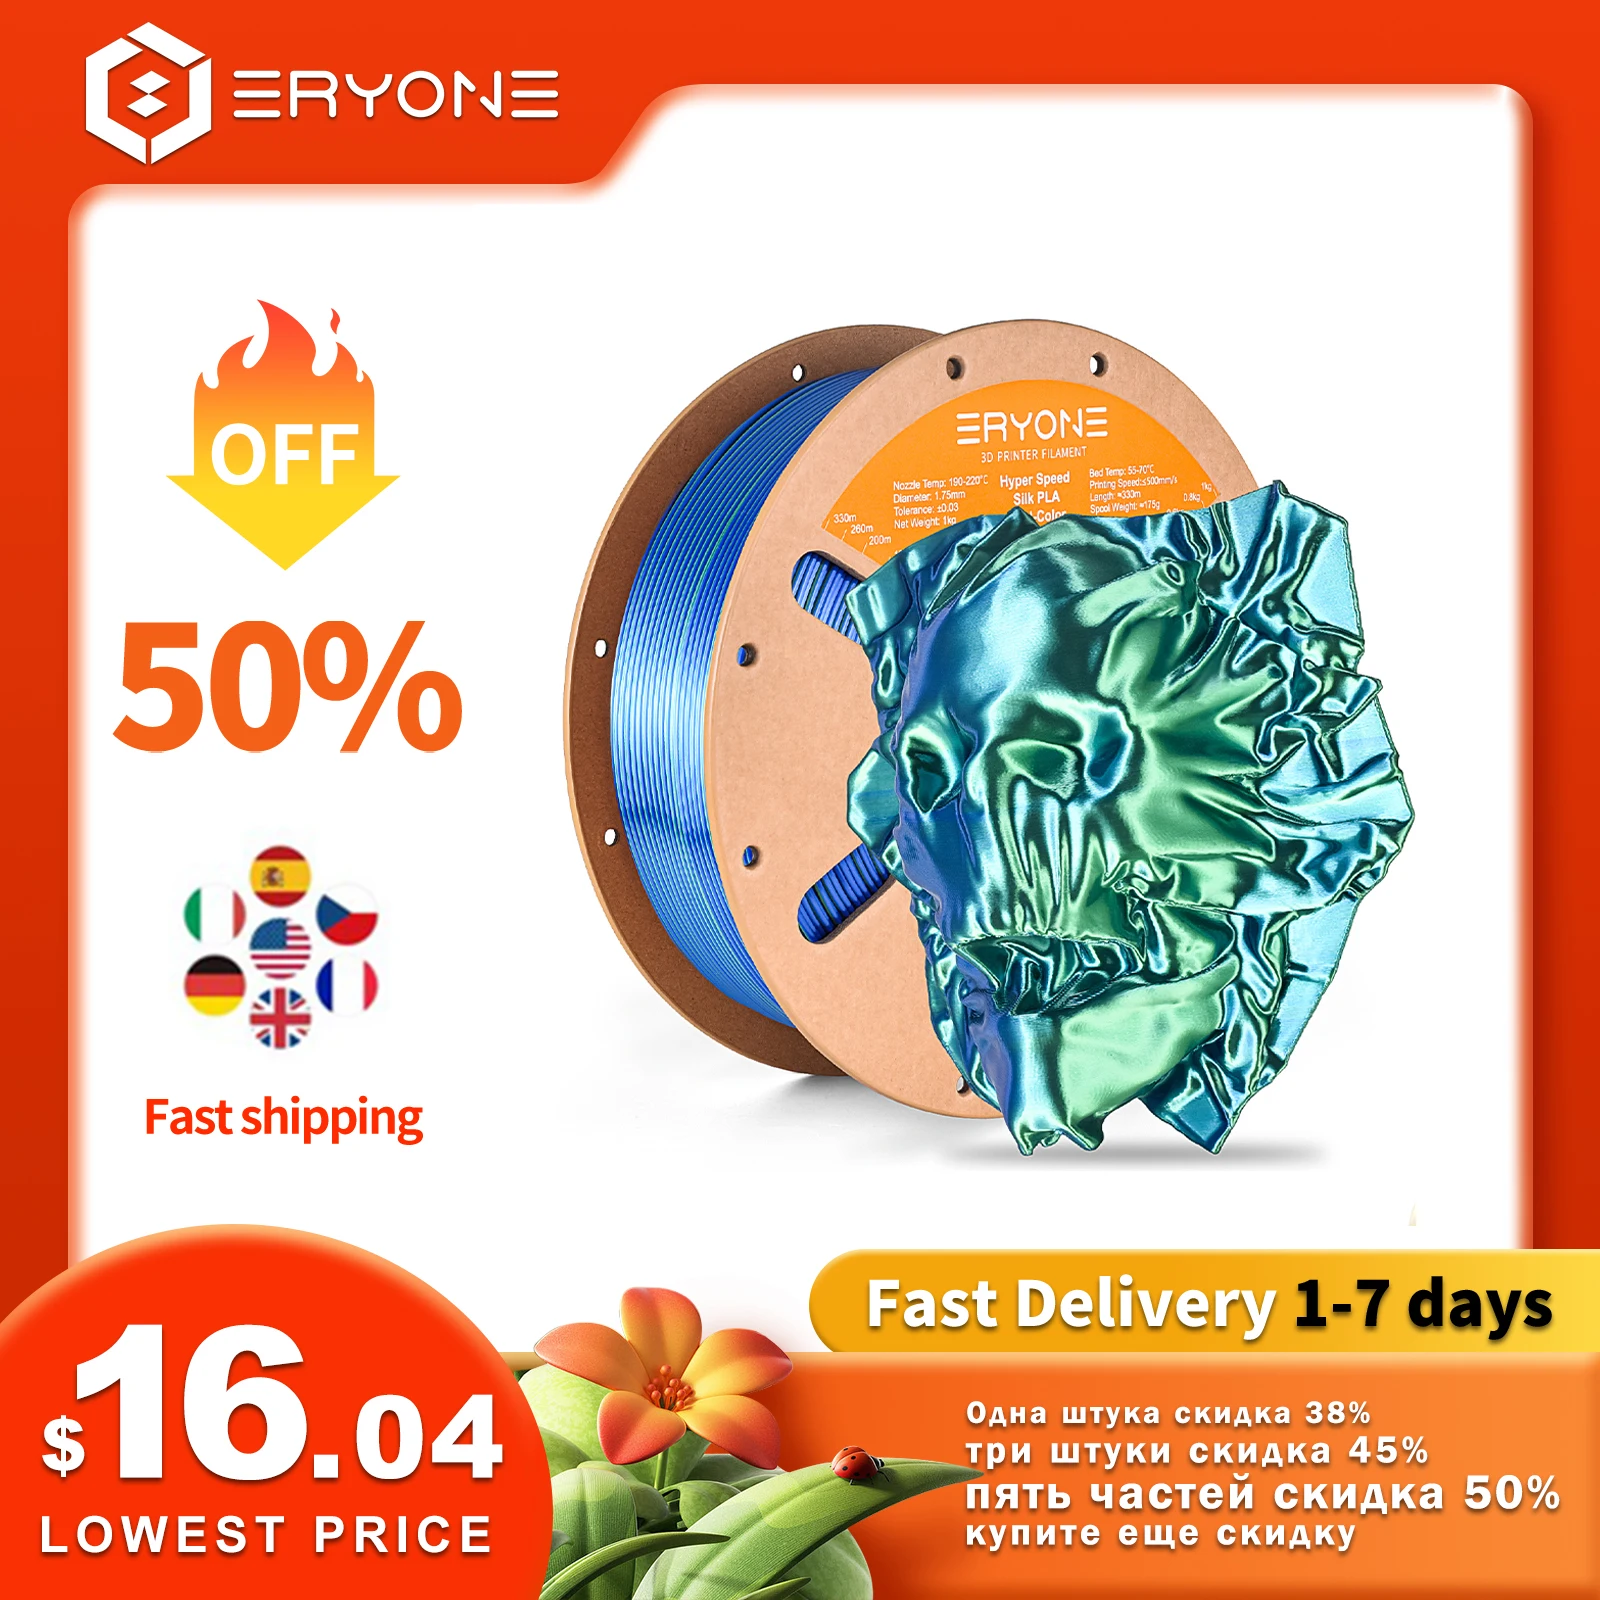 

Eryone New Arrival Hyper Speed Silk PLA Dual Color 1KG Filament Diameter 1.75mm ±0.03mm Perfect Spool Filament For 3D Printer